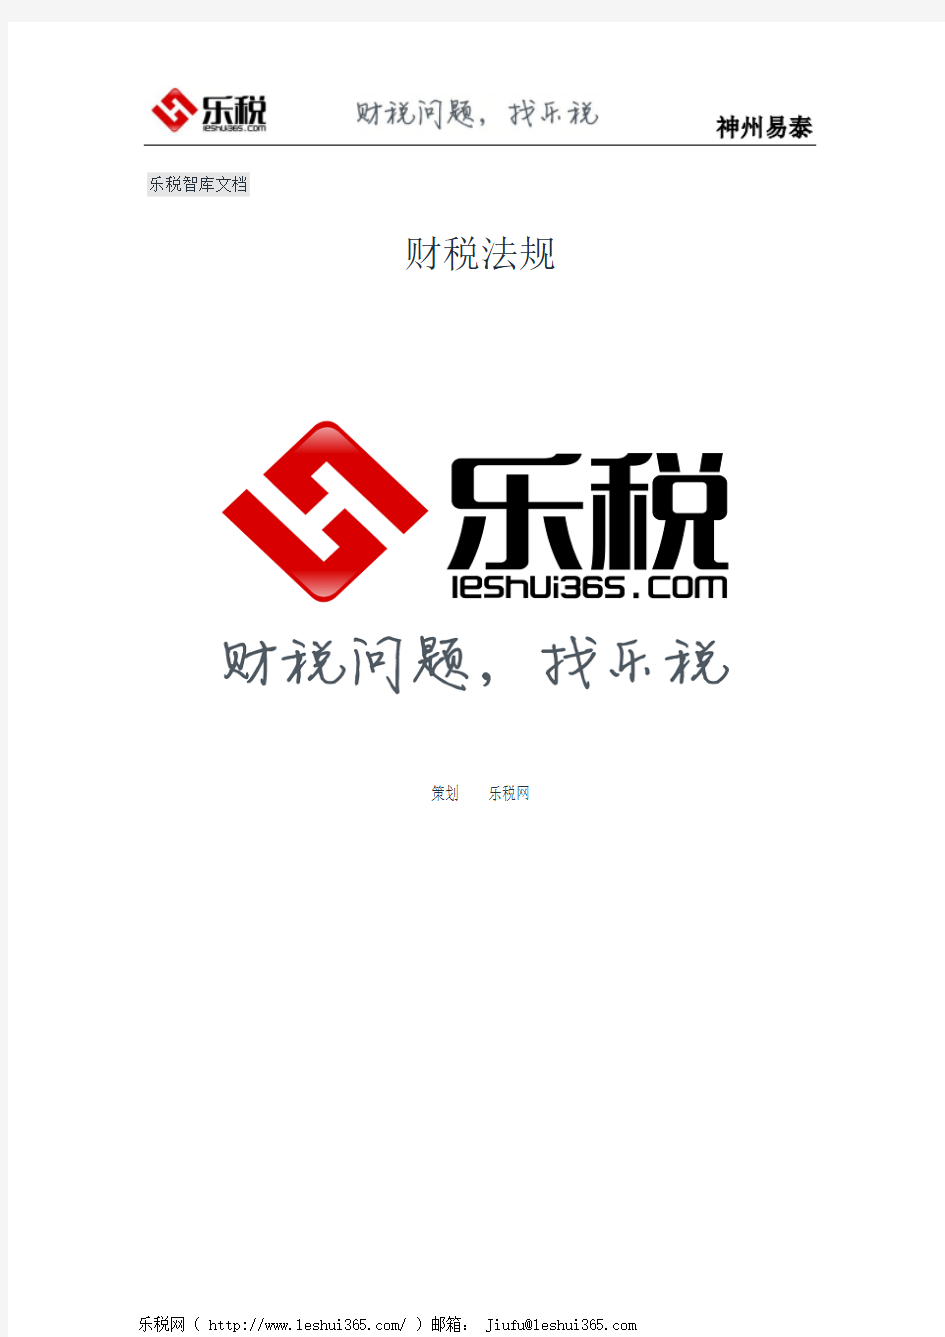 广西壮族自治区国家税务局 关于发布《广西壮族自治区国家税务局